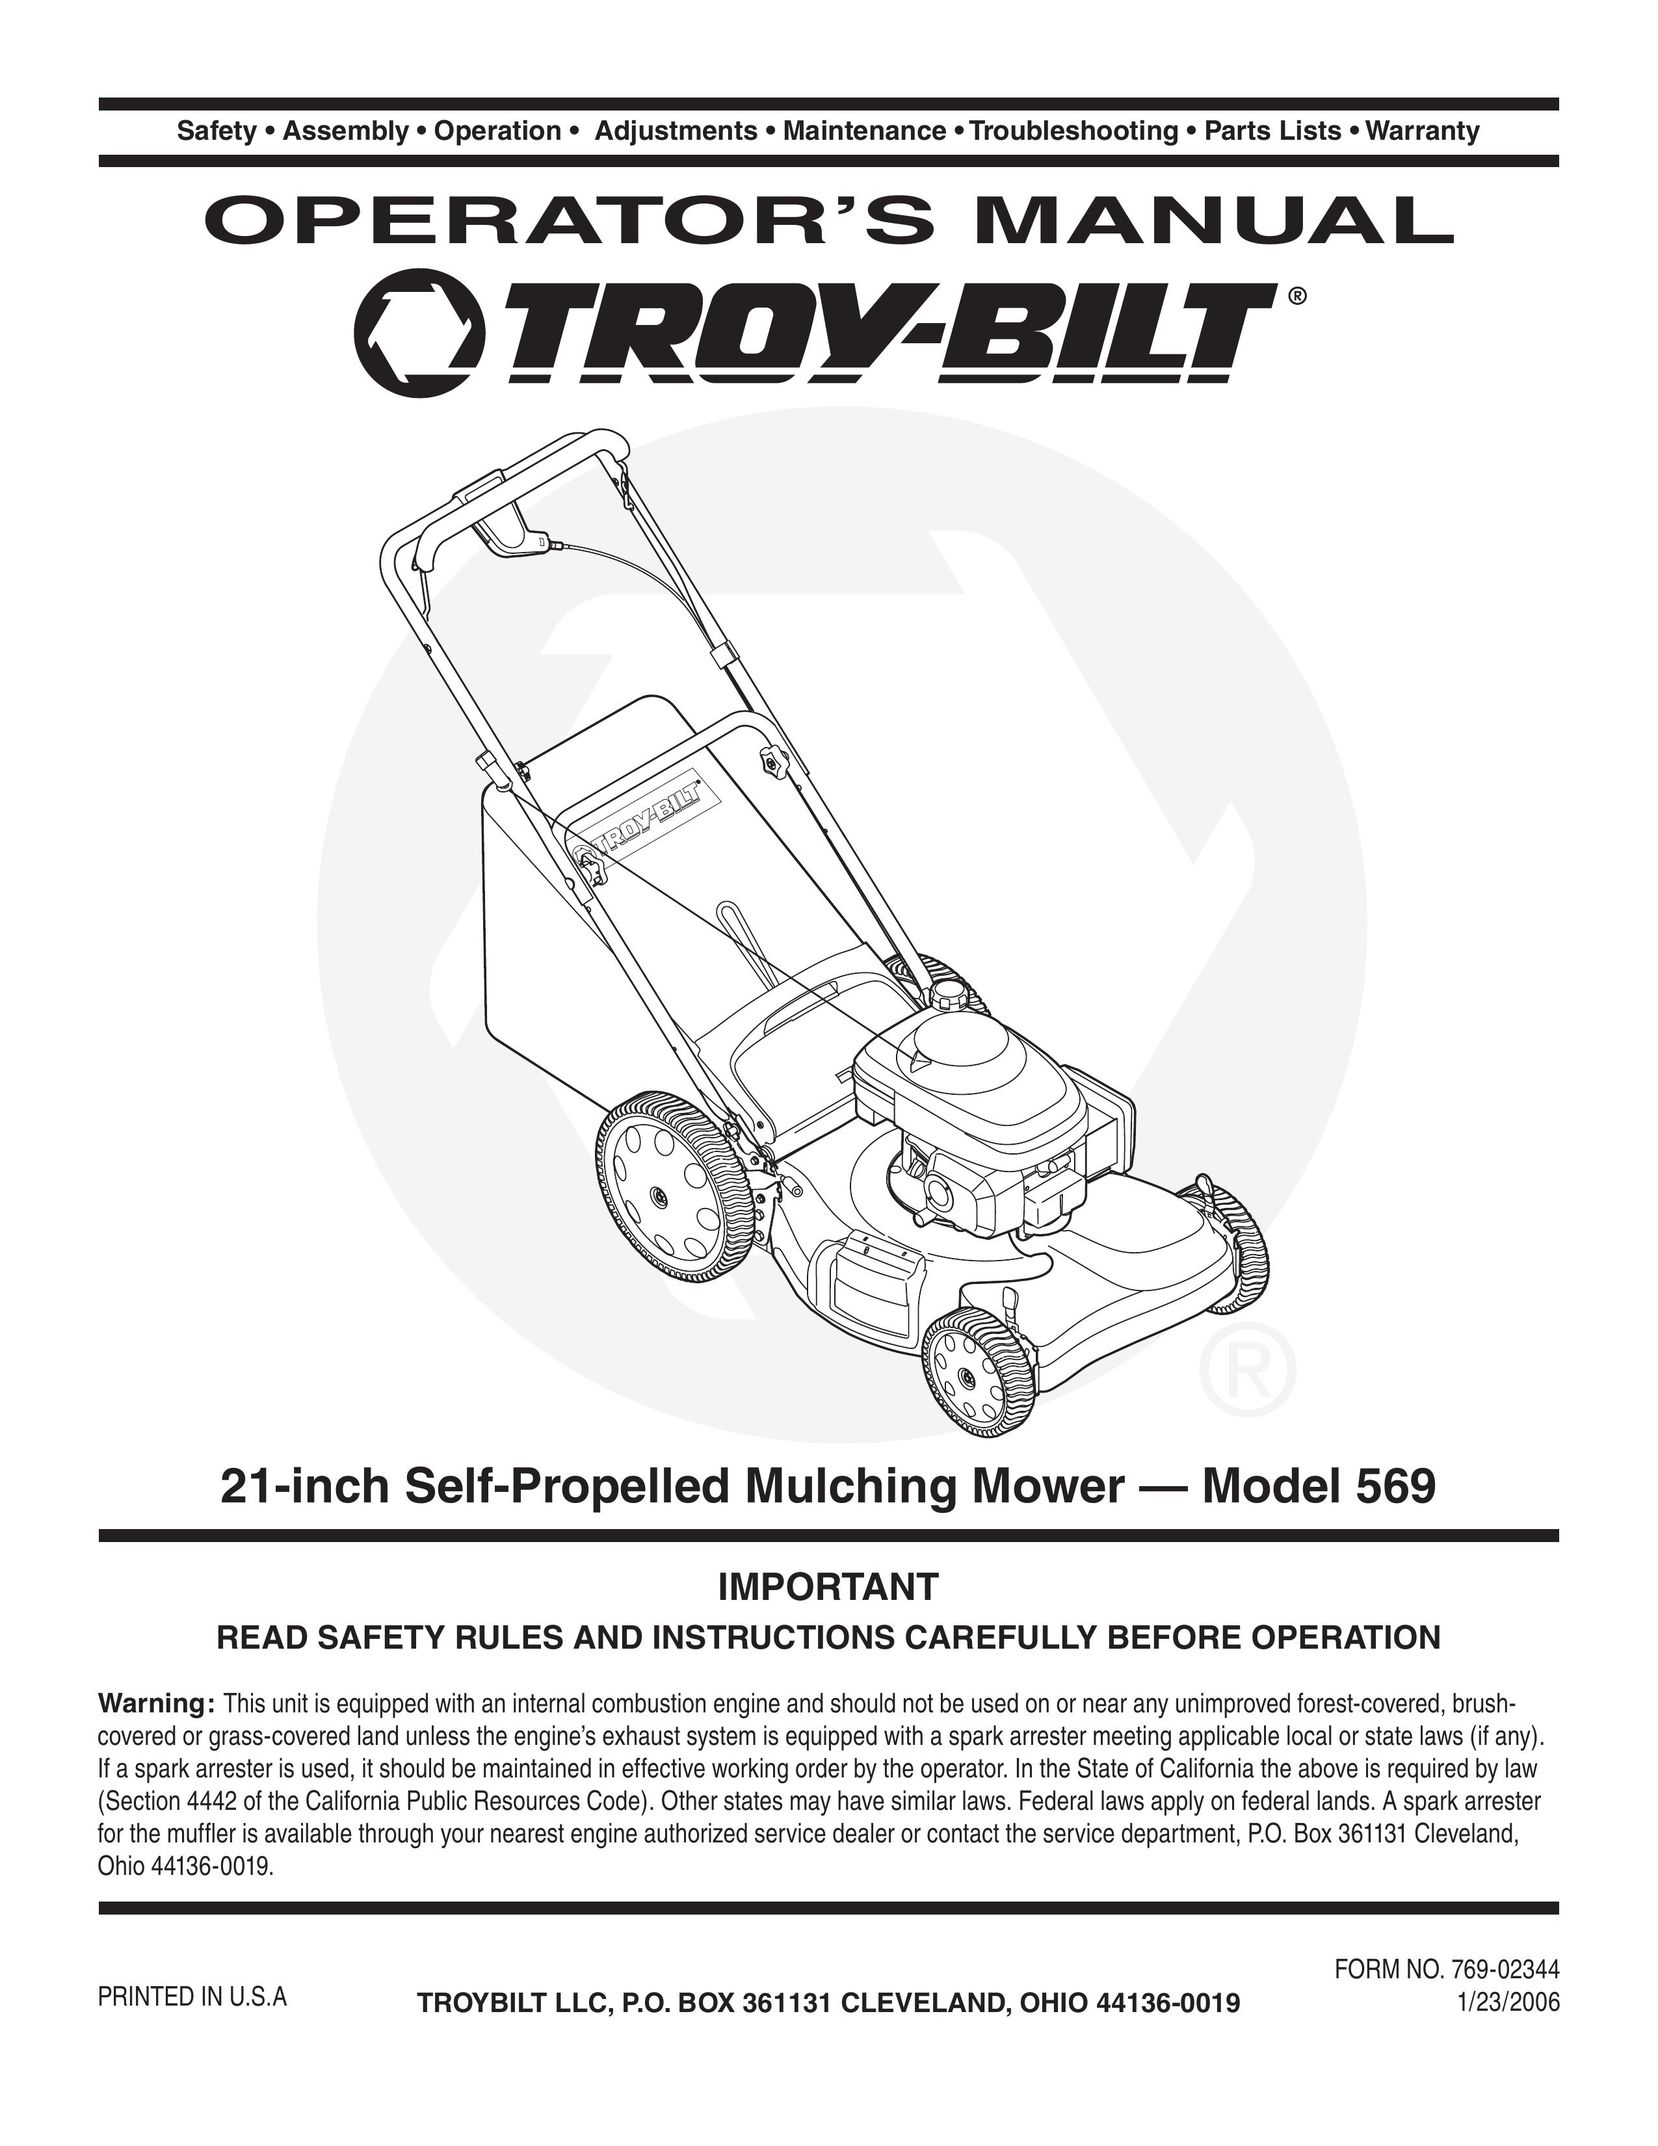 Troy-Bilt 569 Speaker User Manual